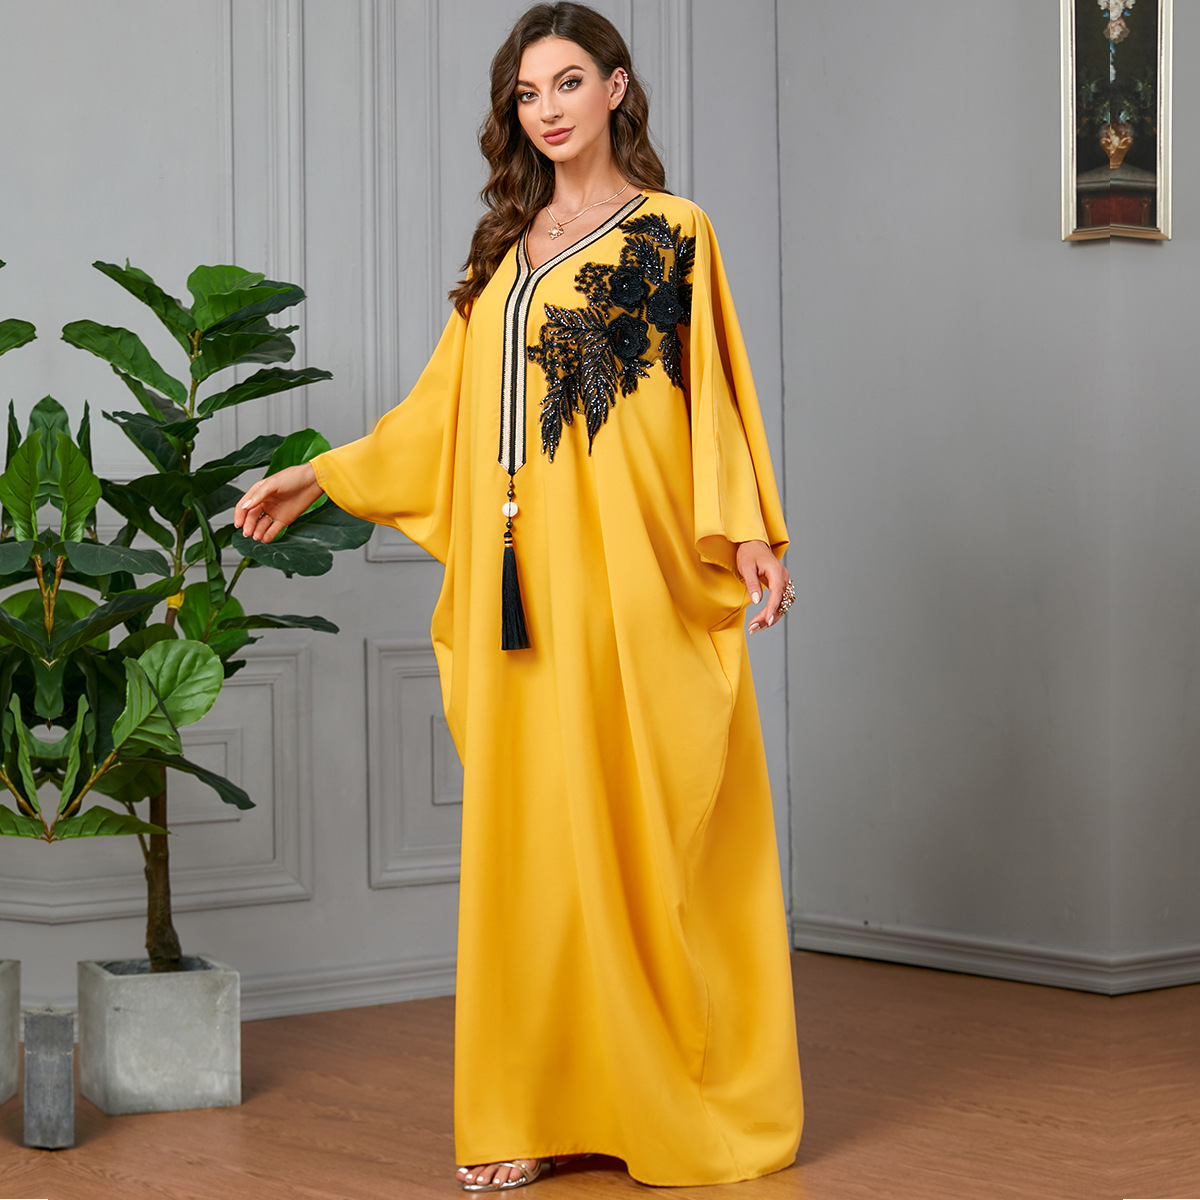 Bat sleeve yellow European style tassels splice dress